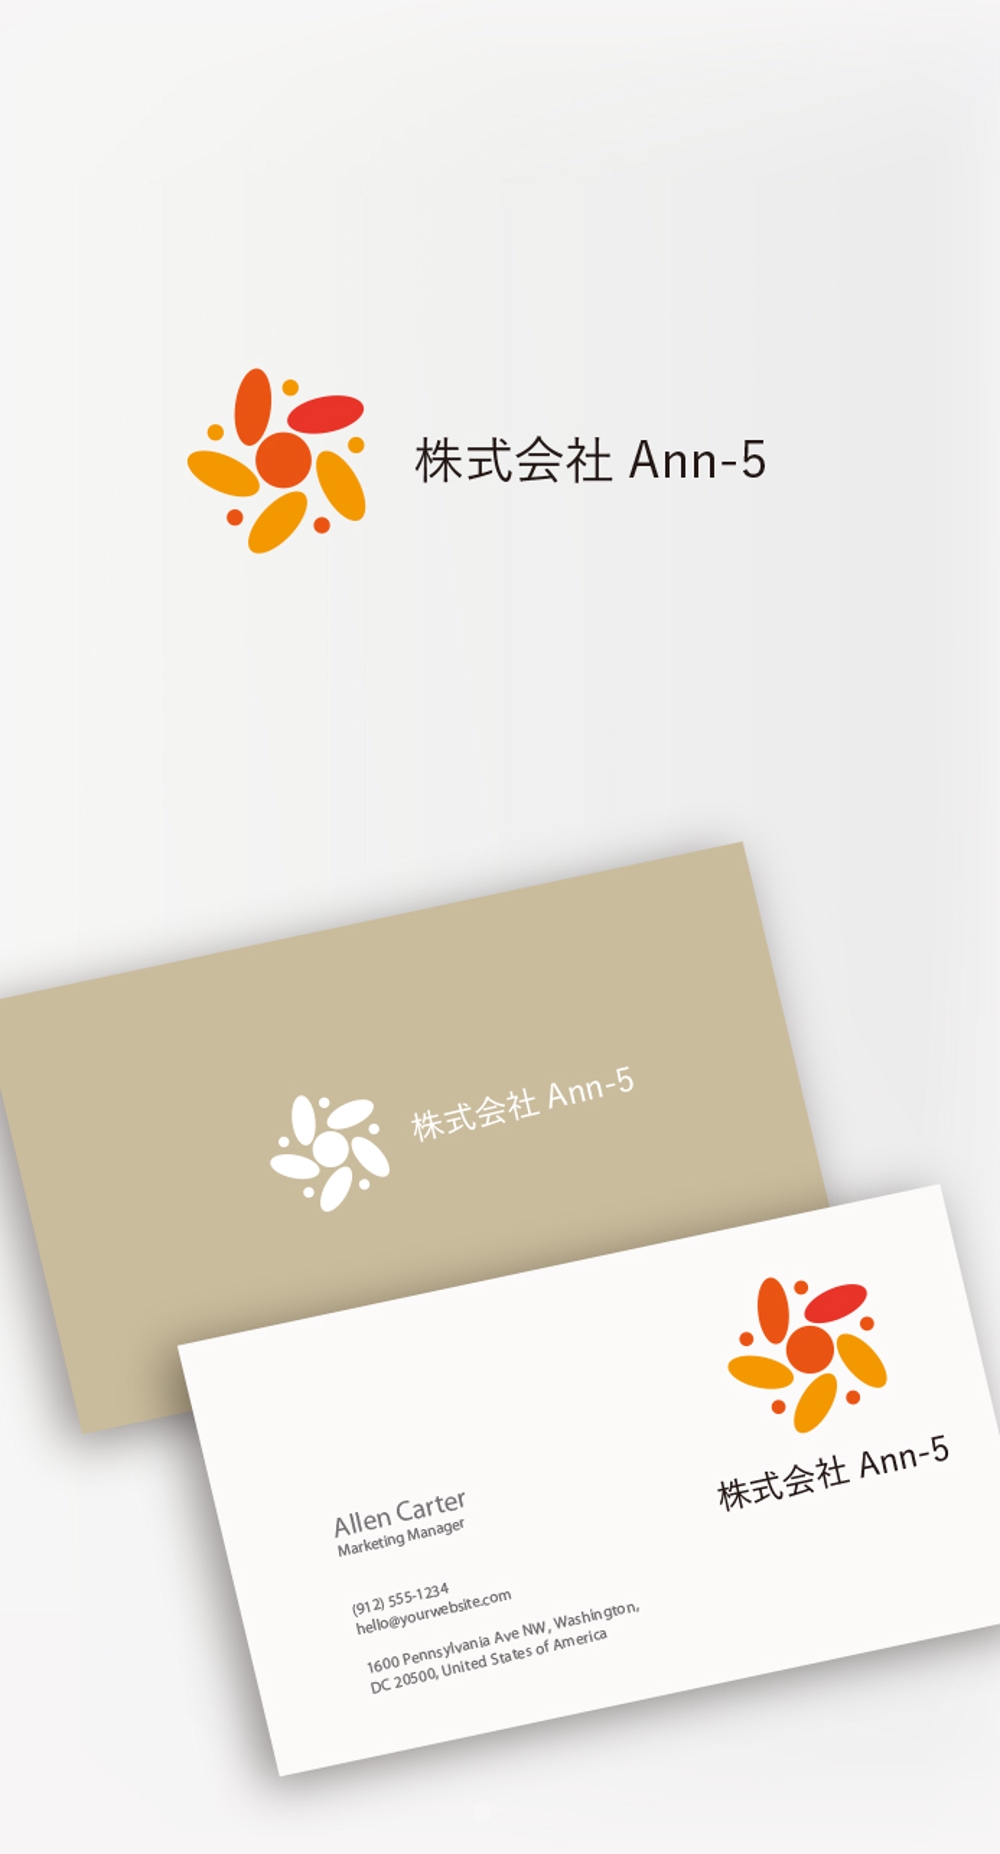 Ann-5_02.jpg